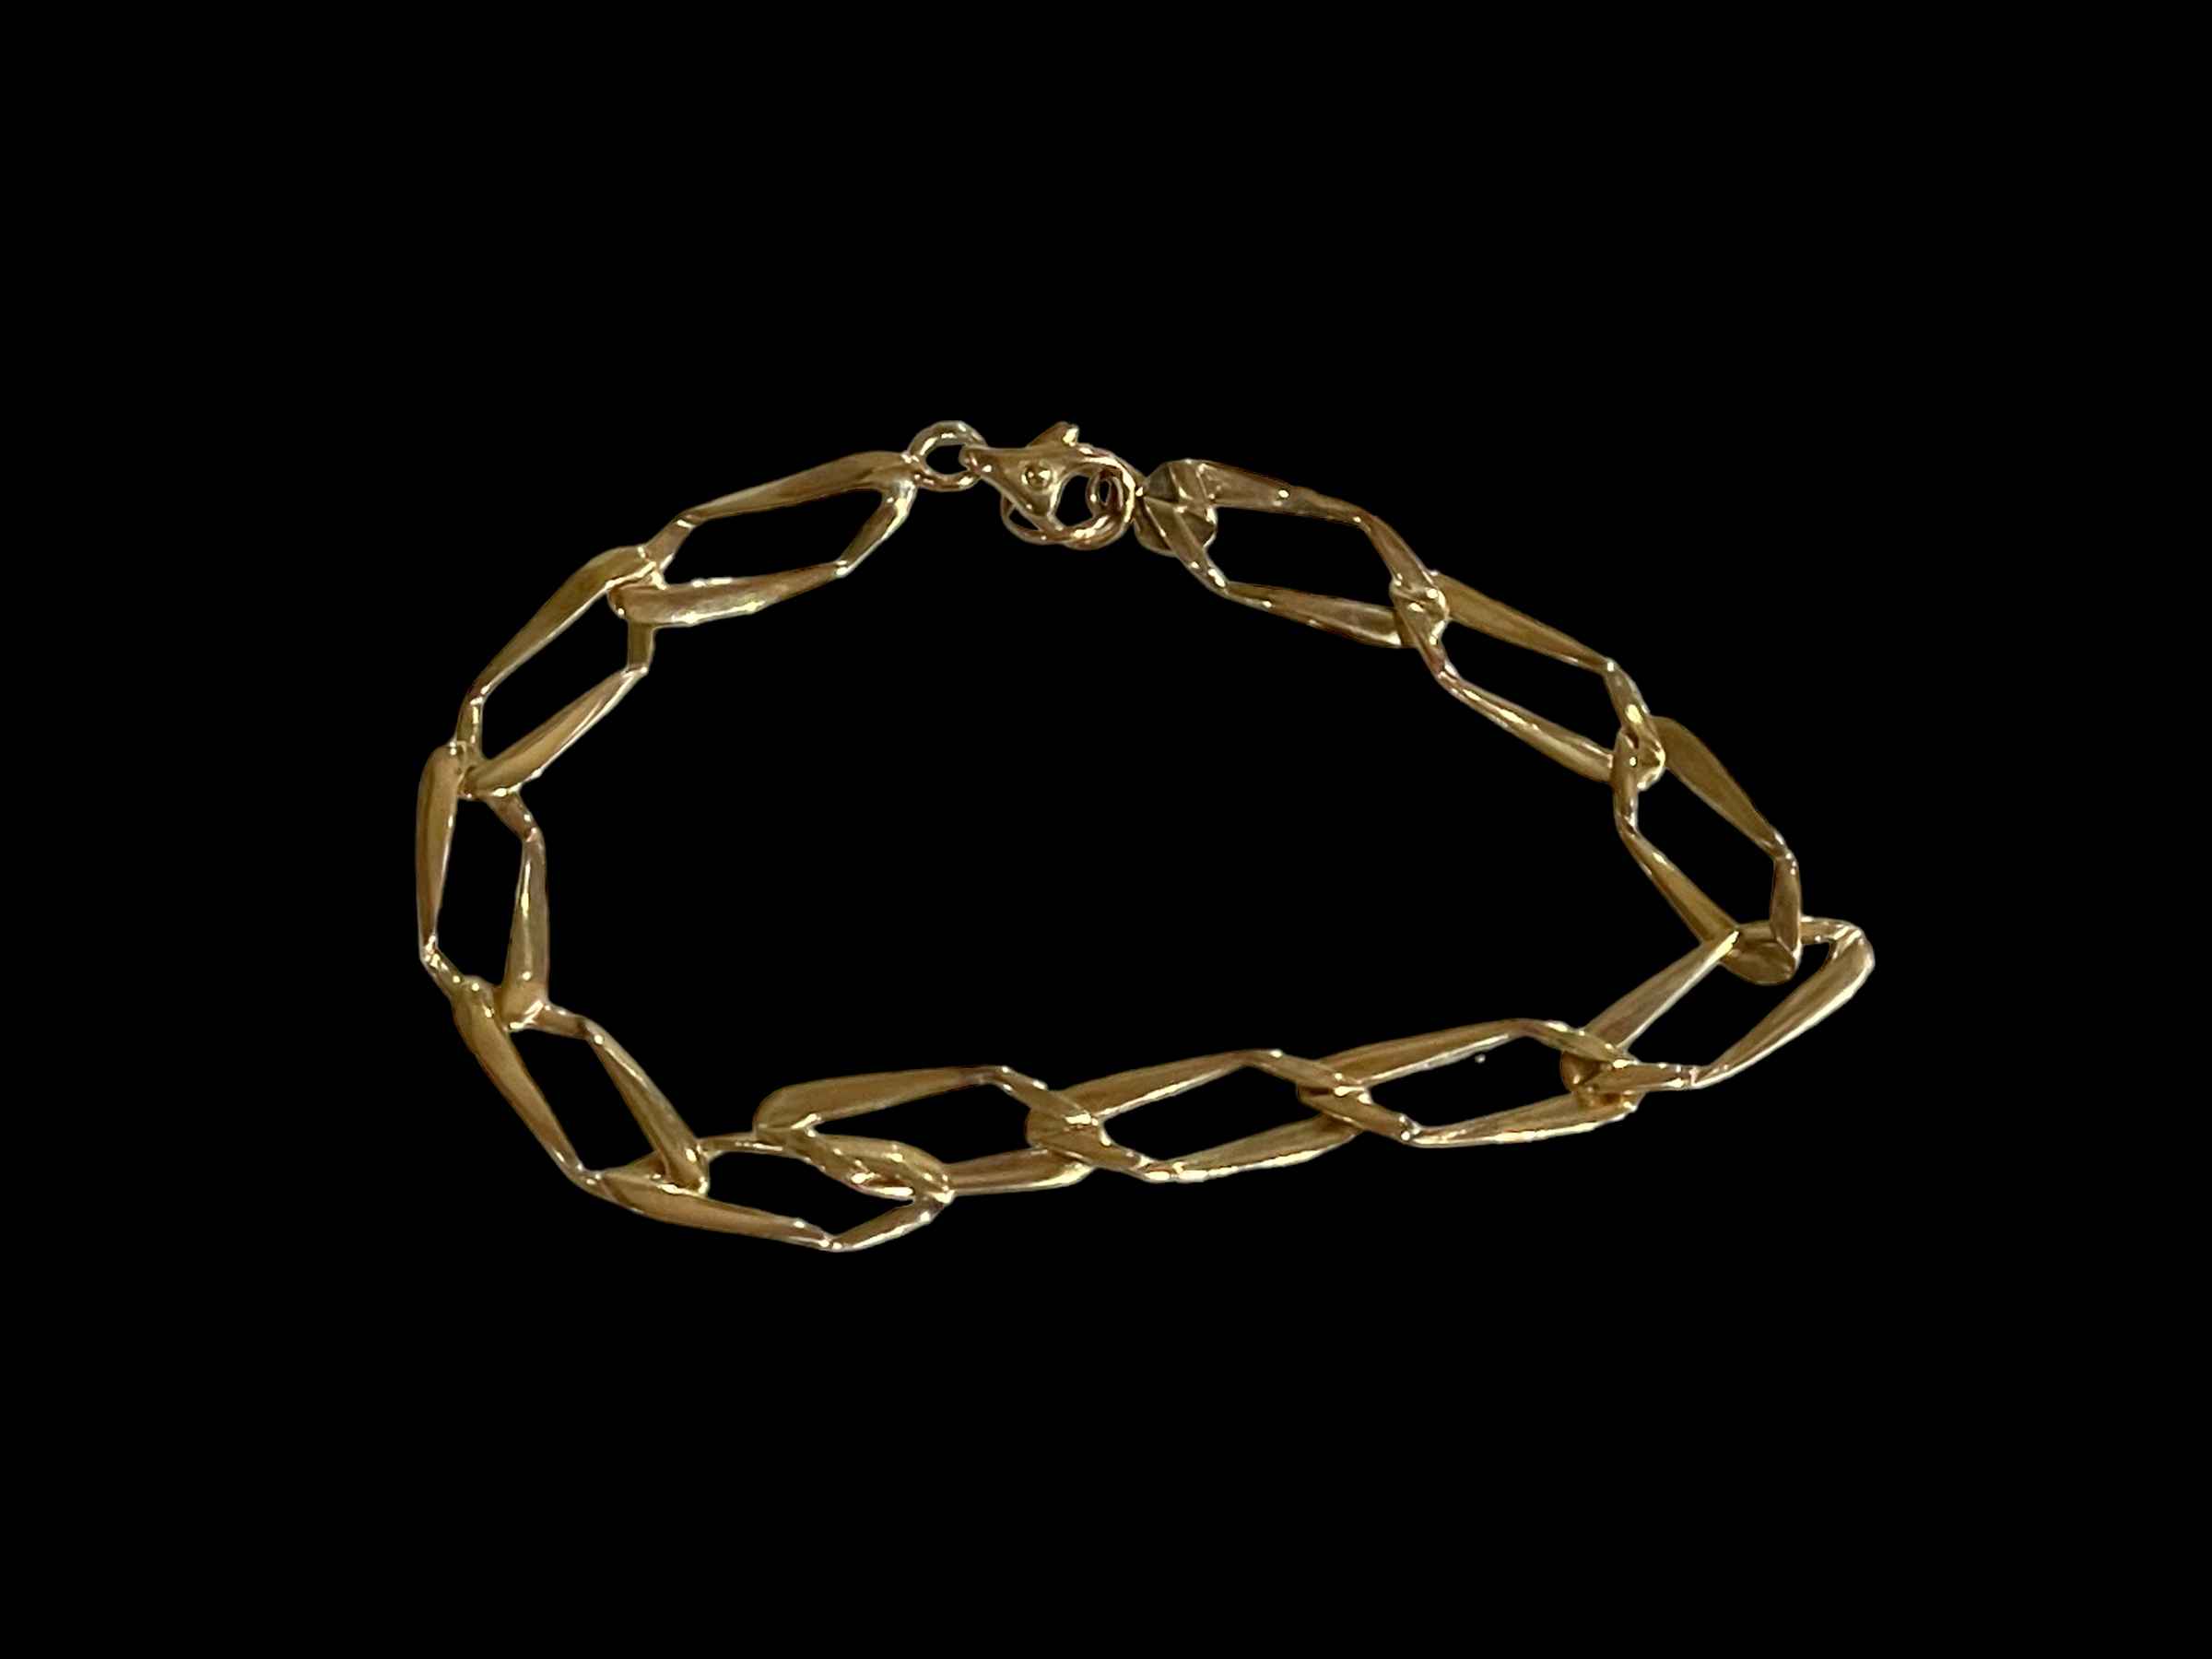 9 carat gold shaped link bracelet, 16cm.